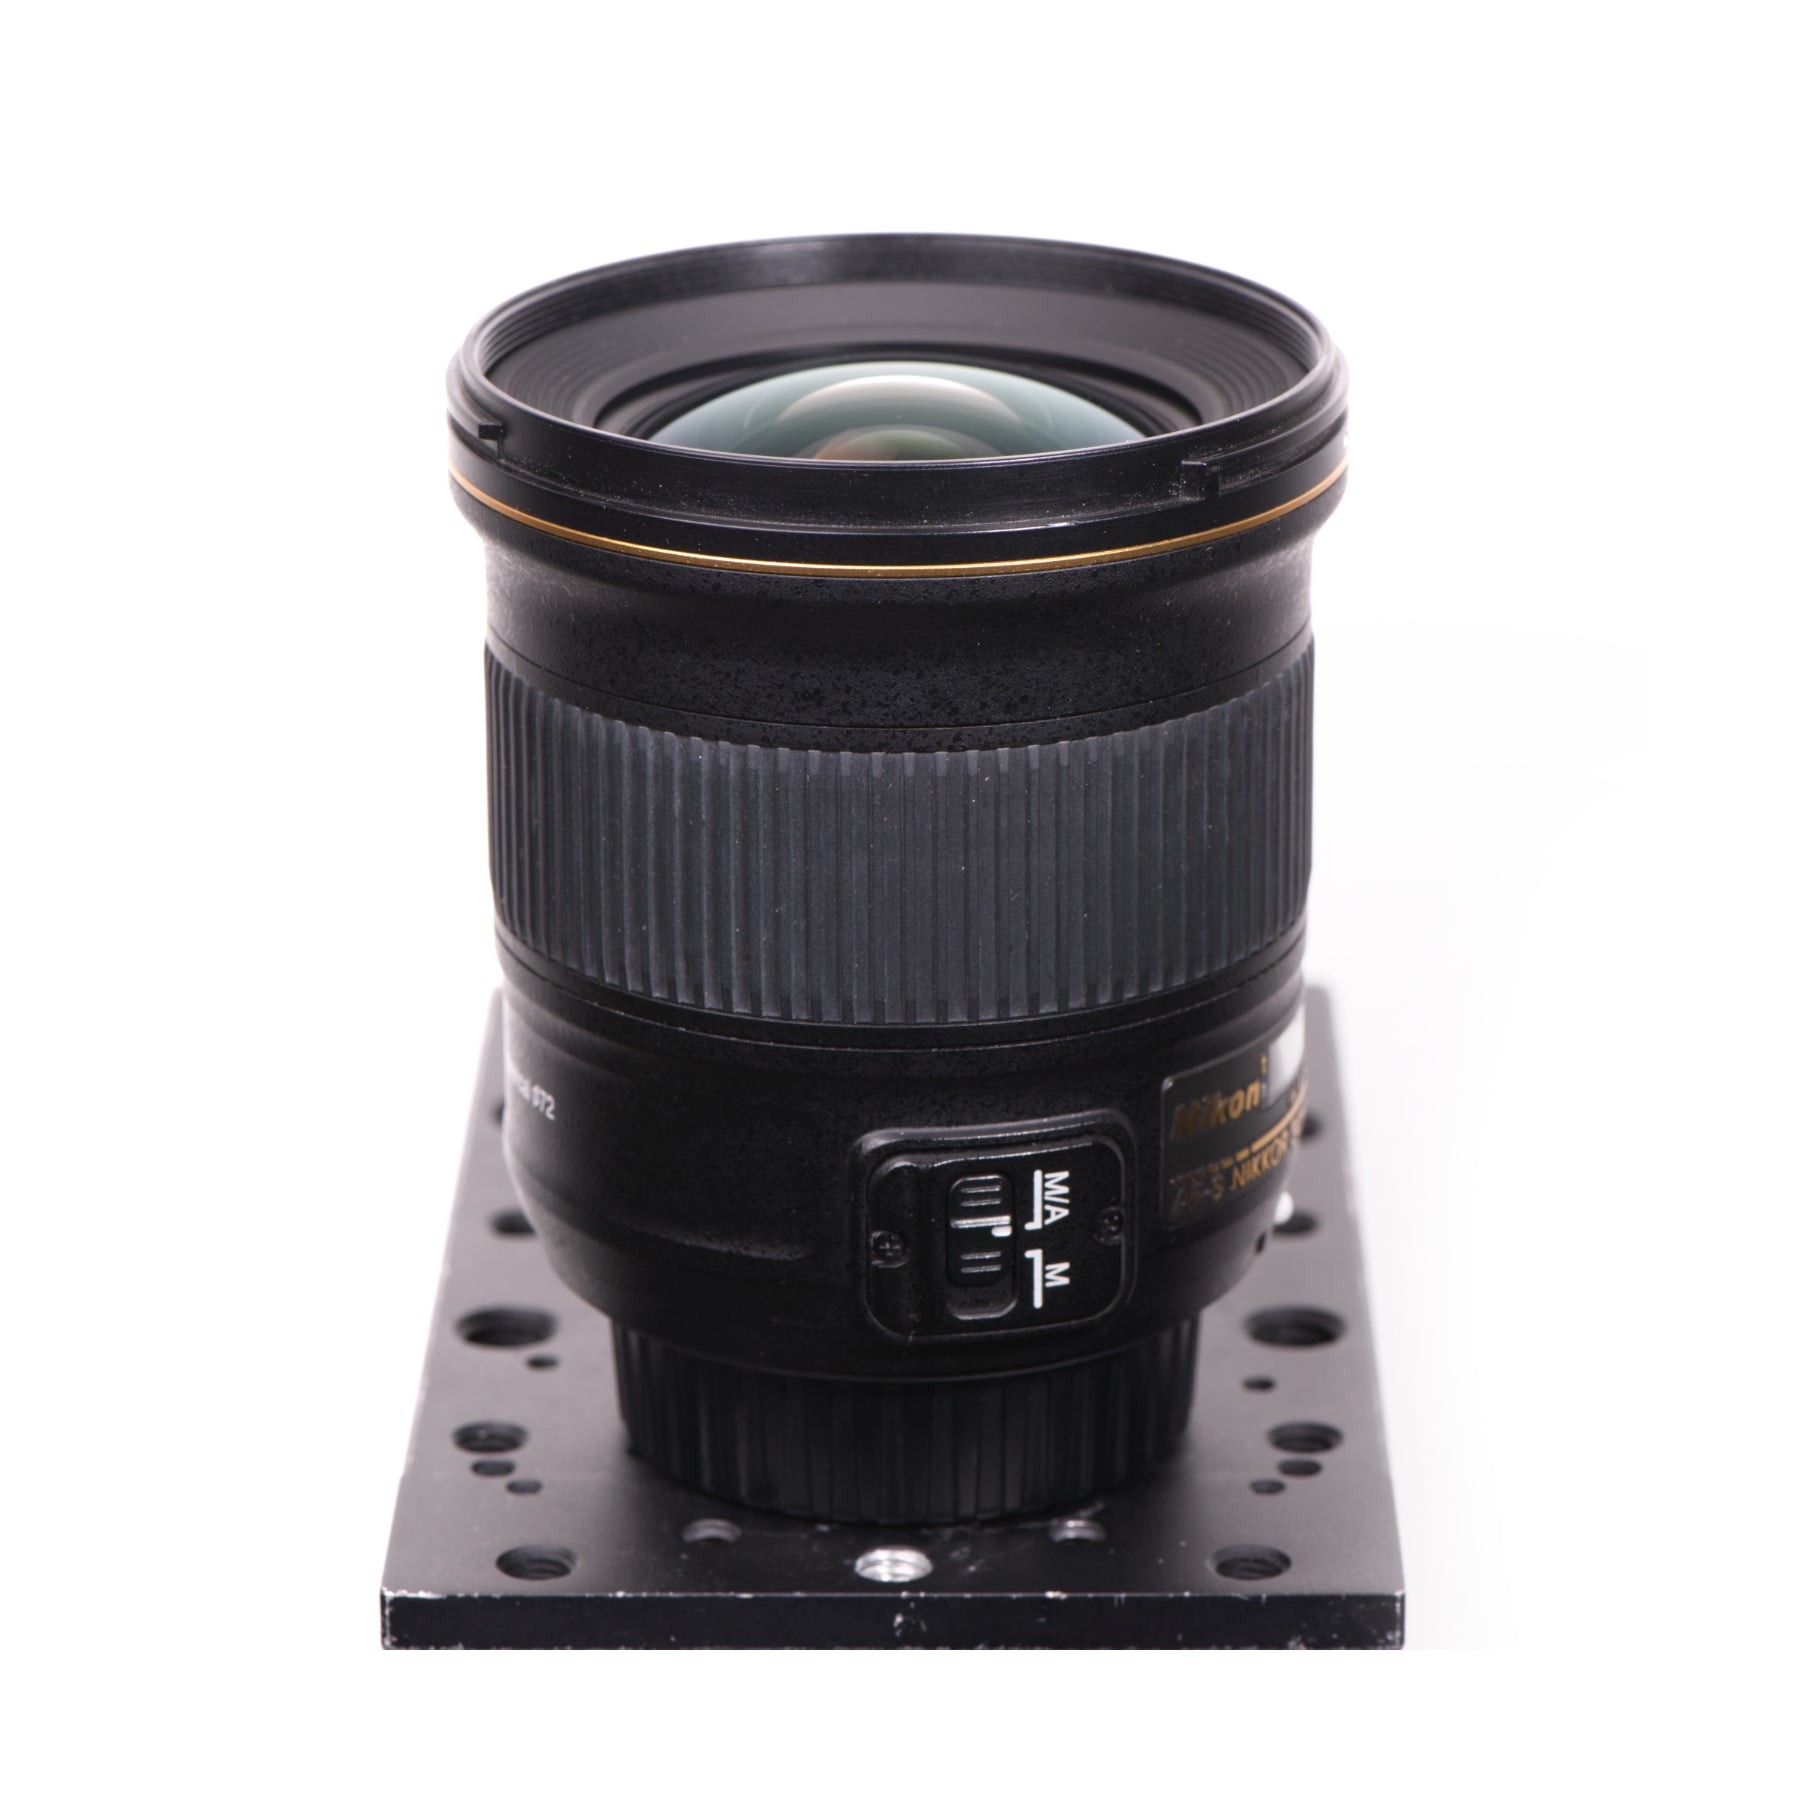 Buy Nikon AF-S NIKKOR 24mm f/1.8G ED Lens - Ex Rental at Topic Store